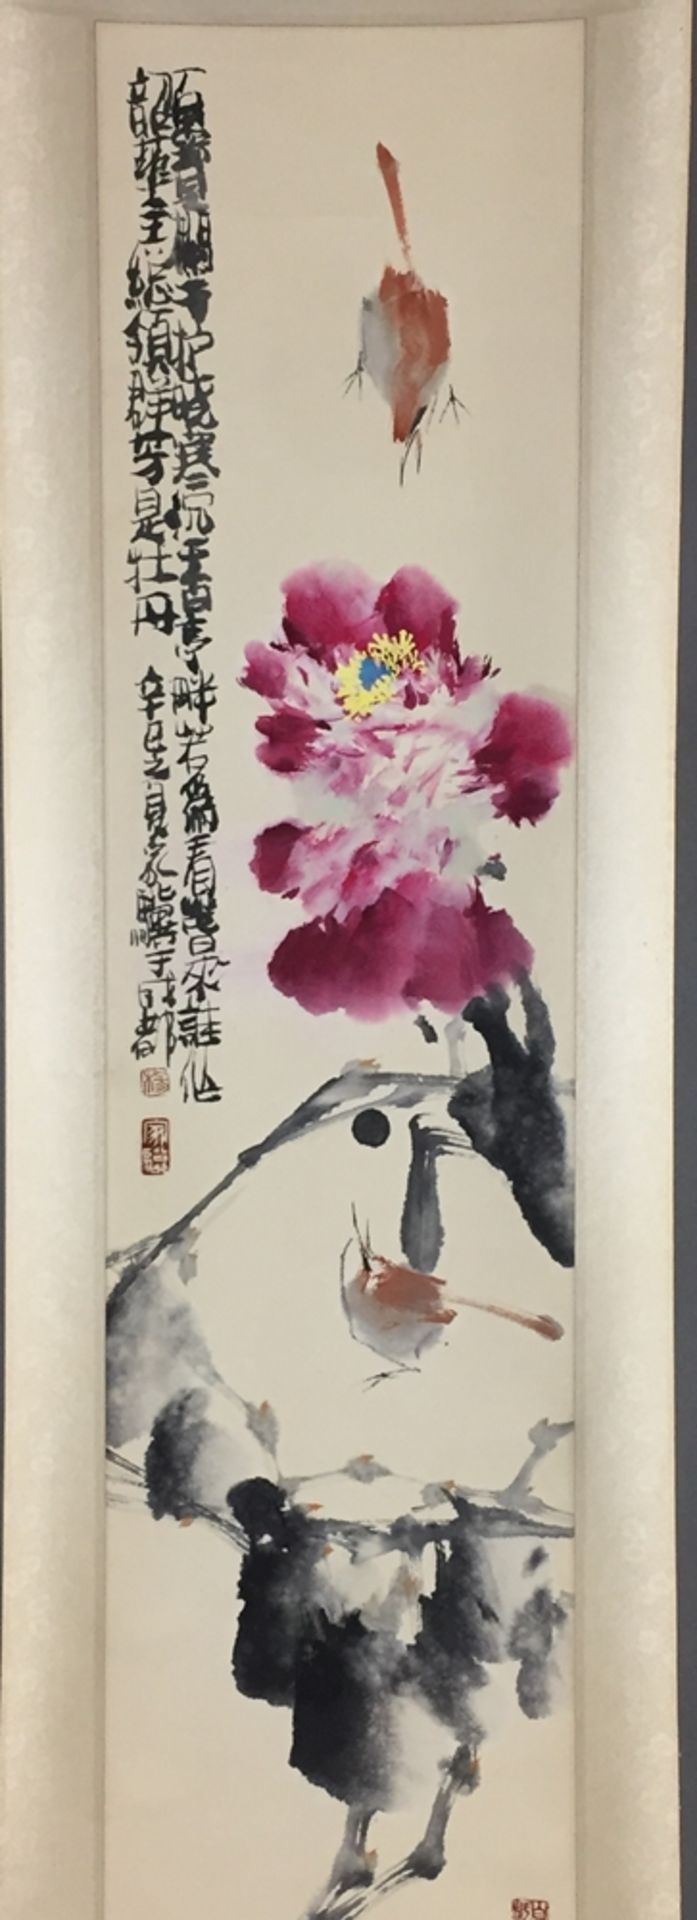 Chinesisches Rollbild - Blühender Baumzweig über felsigem Grund mit Vogelpaar, leichte Farben und